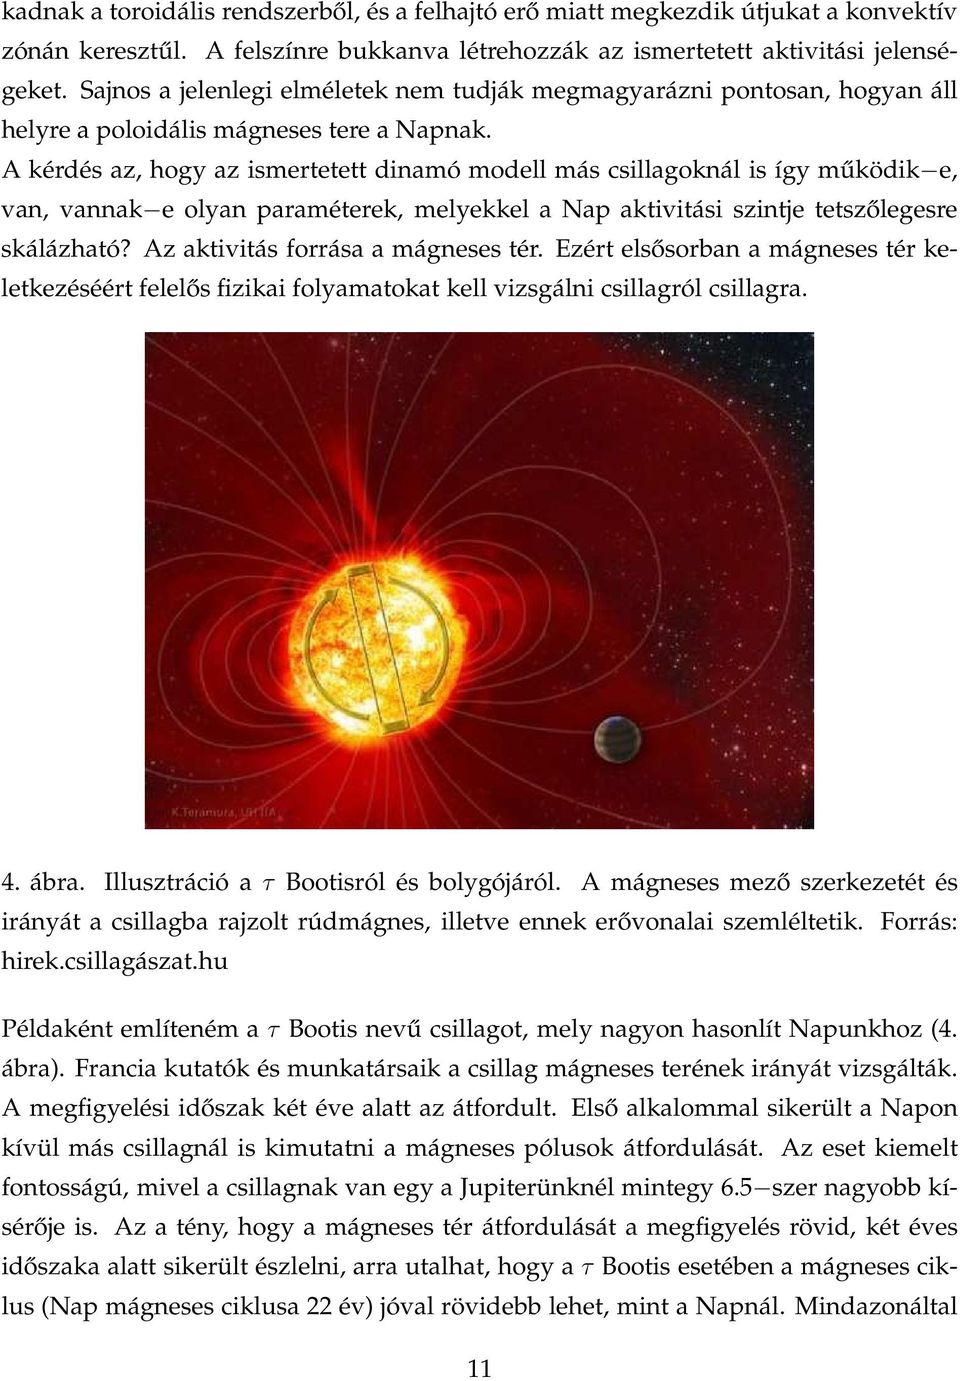 A kérdés az, hogy az ismertetett dinamó modell más csillagoknál is így működik e, van, vannak e olyan paraméterek, melyekkel a Nap aktivitási szintje tetszőlegesre skálázható?